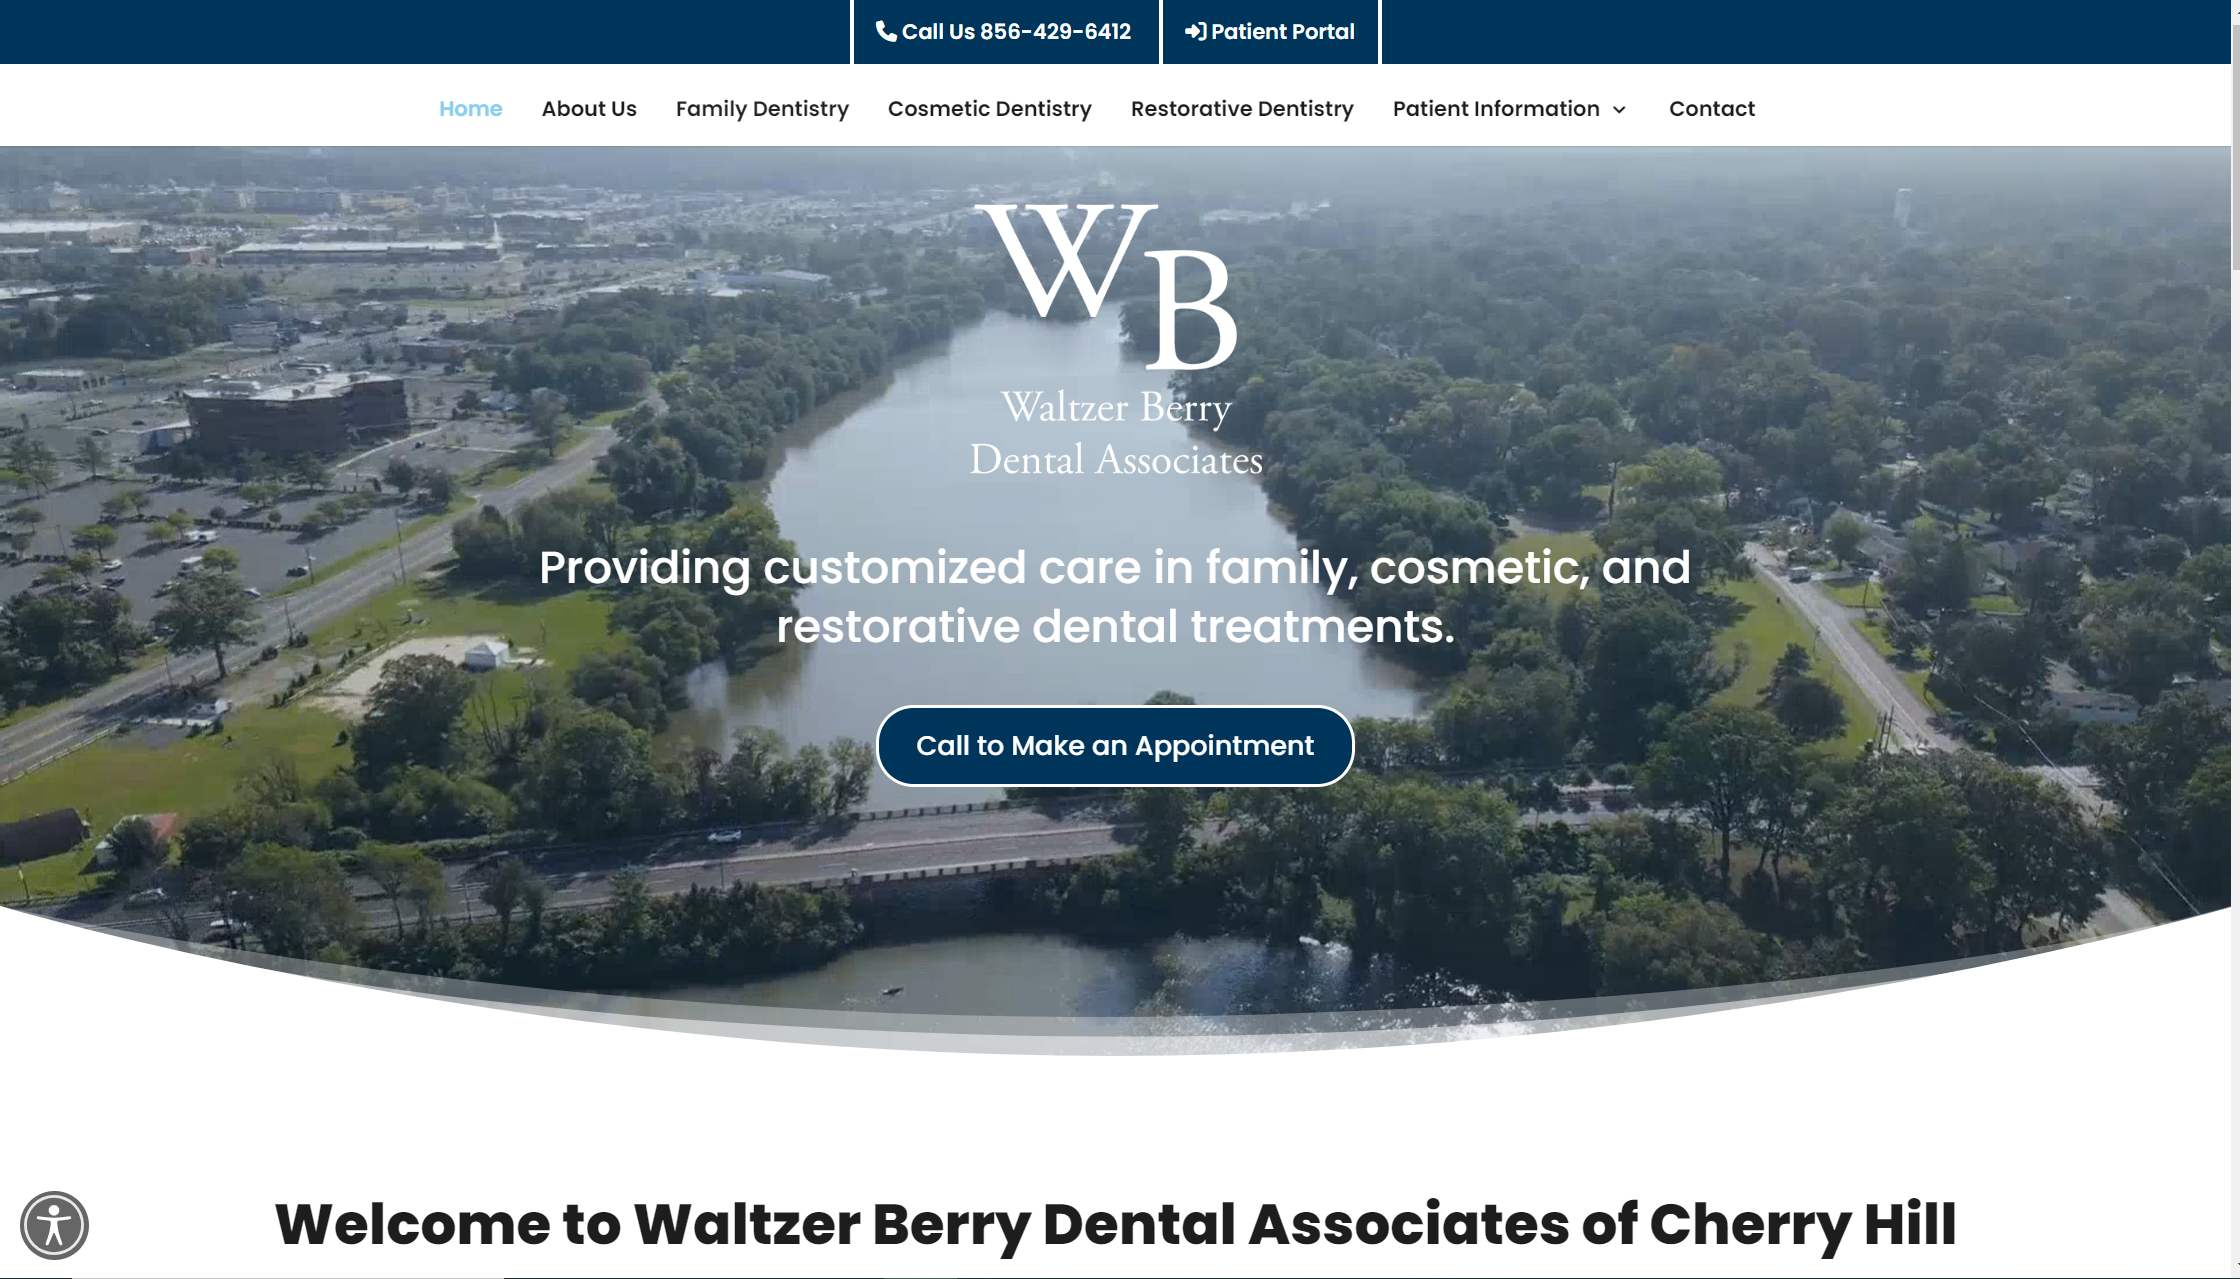 Waltzer Berry Dental Associates of Cherry Hill